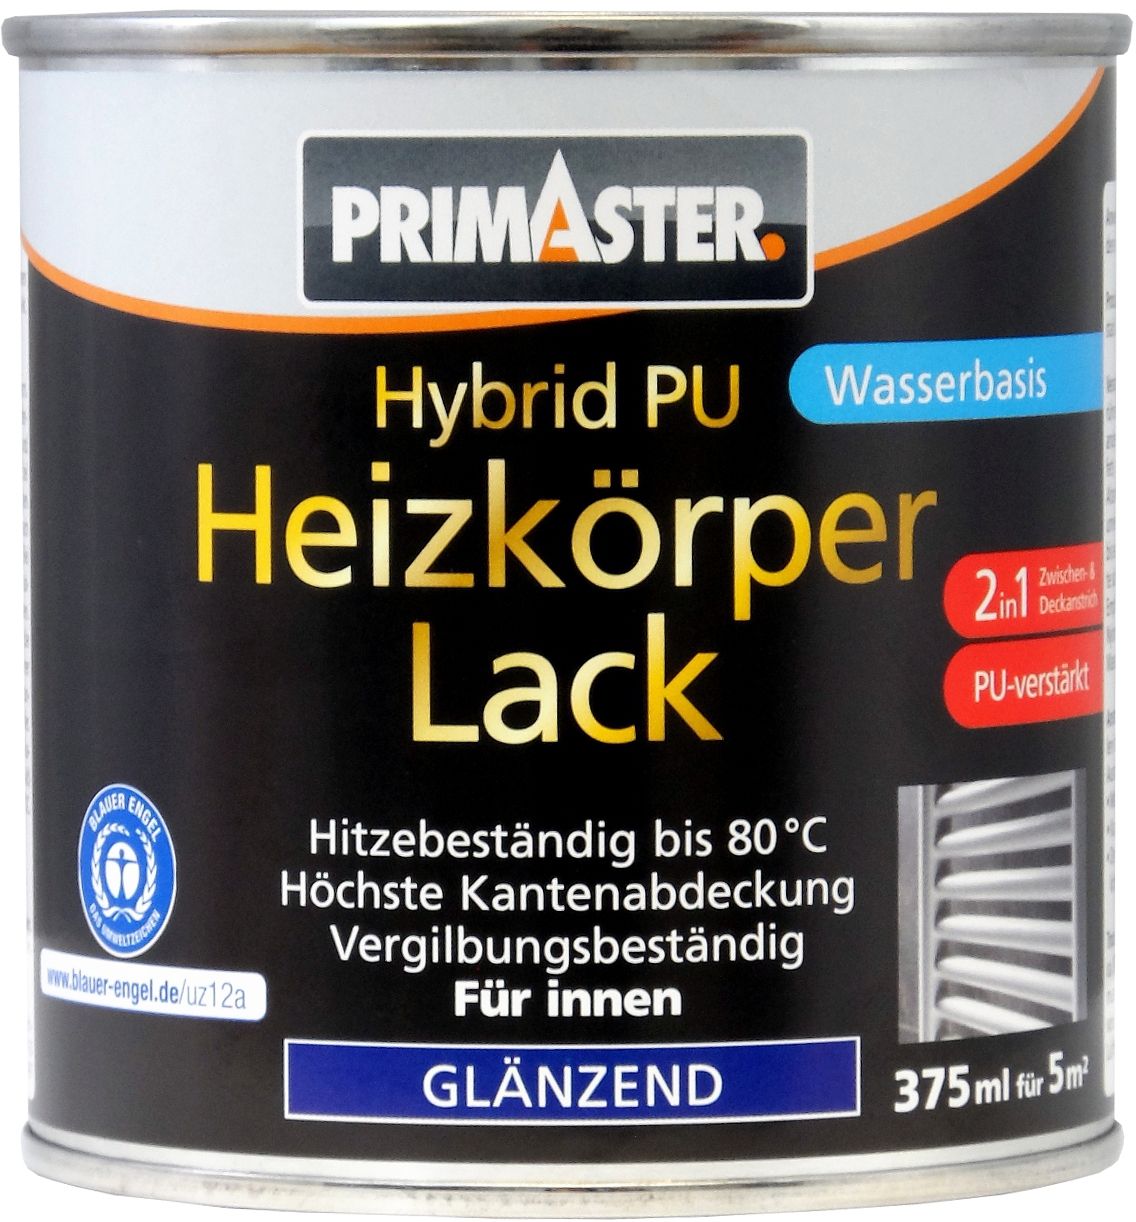 Primaster Hybrid-PU Heizkörperlack 375 ml weiß glänzend von Primaster